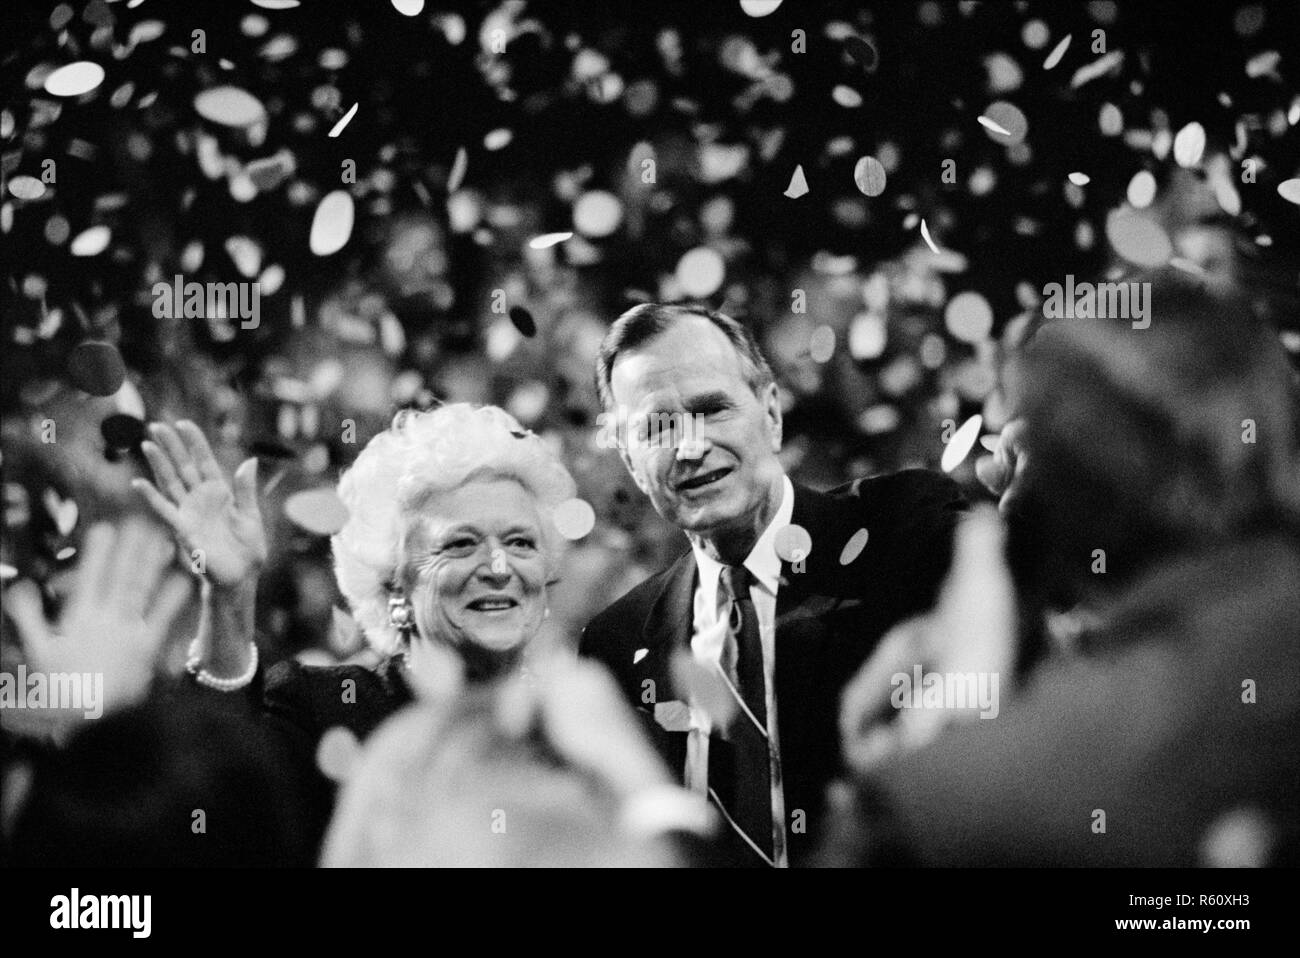 Candidato presidenziale George H.W. Bush e la moglie Barbara Bush ondata di folla nel 1992 alla Convention Nazionale Repubblicana a Houston, Texas. Foto Stock